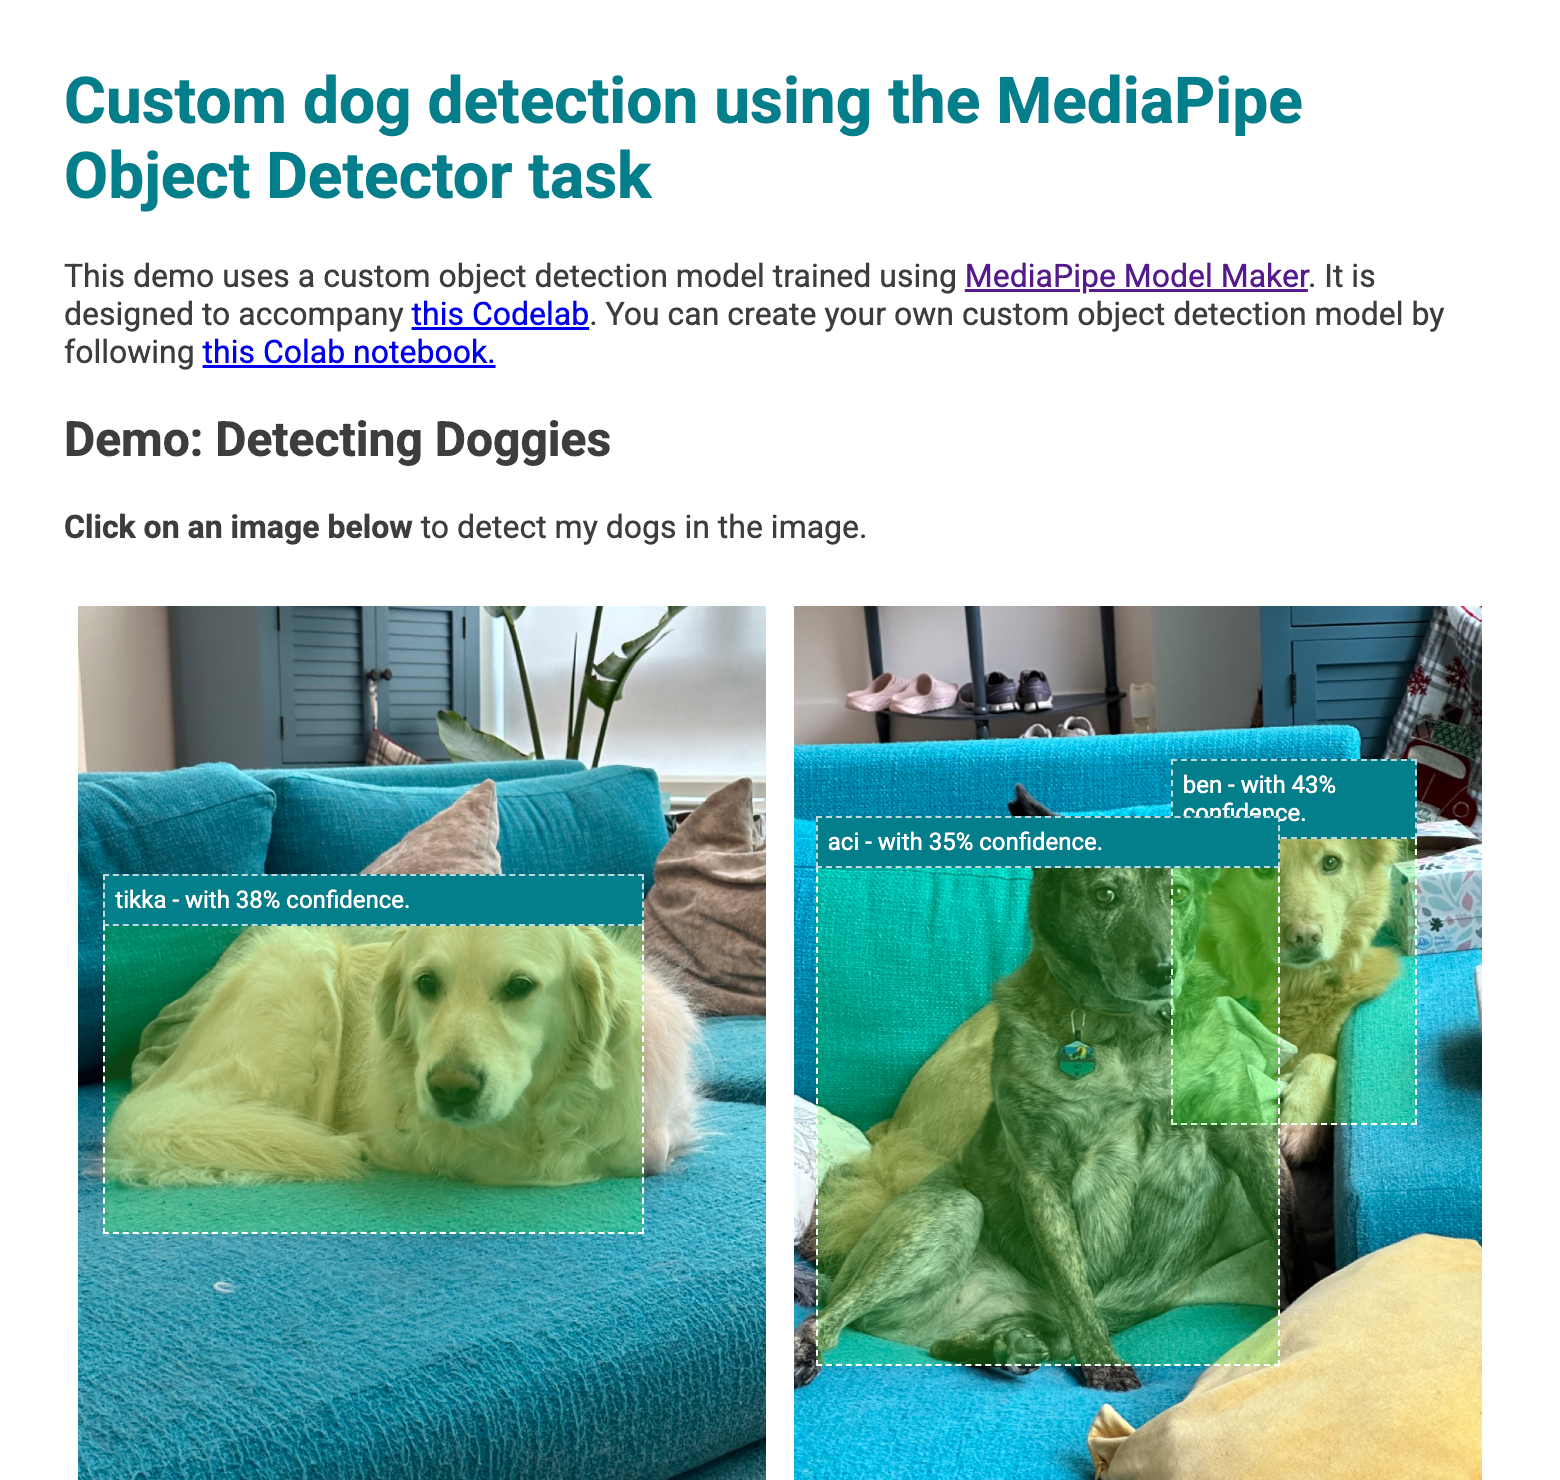 Podgląd aplikacji internetowej z ramkami ograniczającymi psy wykryte na obrazach